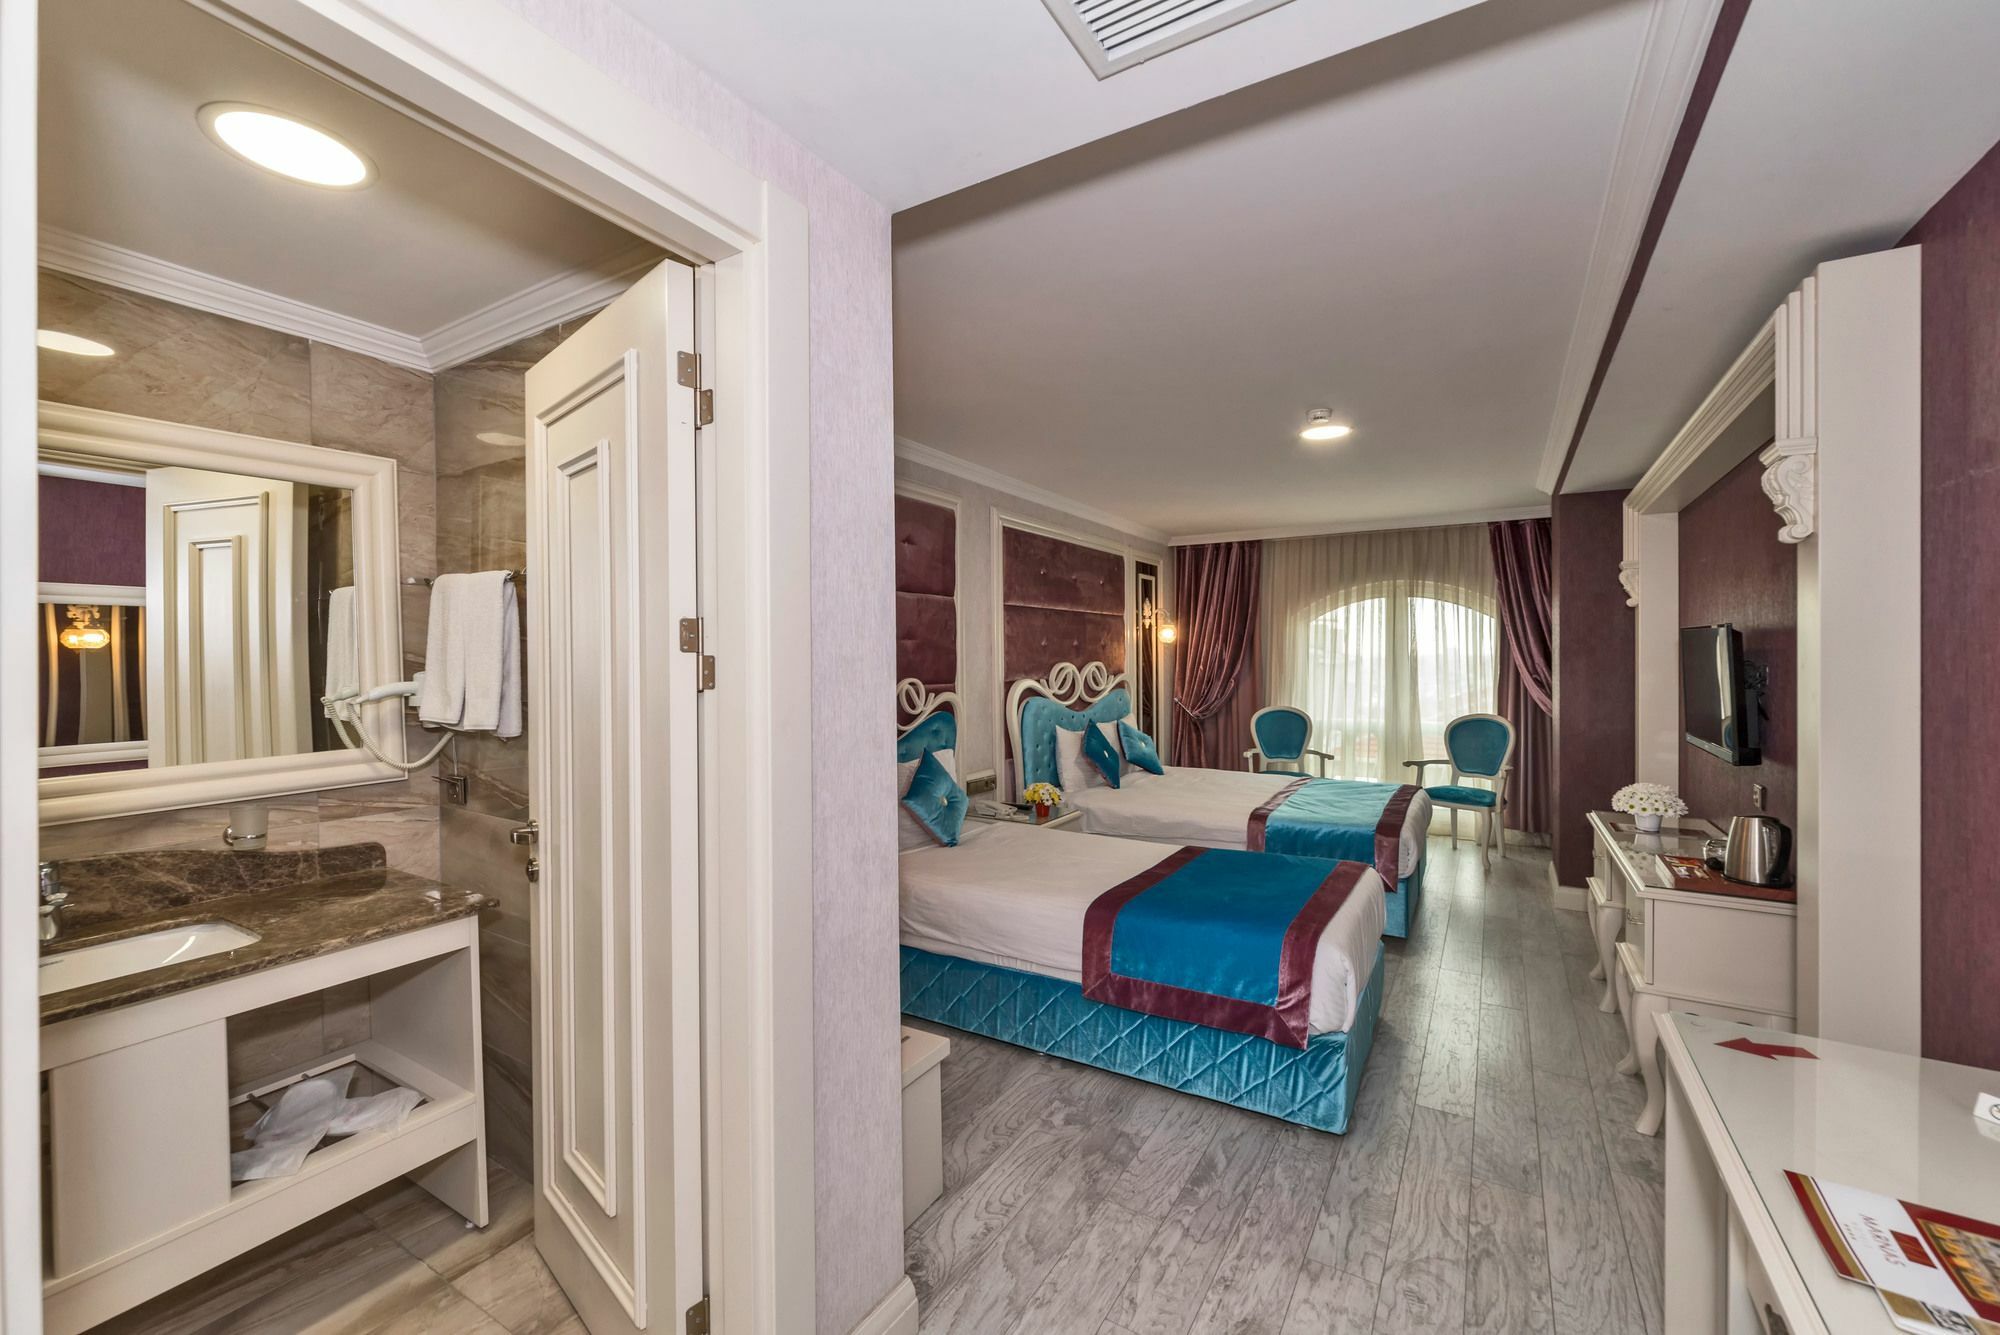 Marnas Hotels Provincia di Provincia di Istanbul Esterno foto